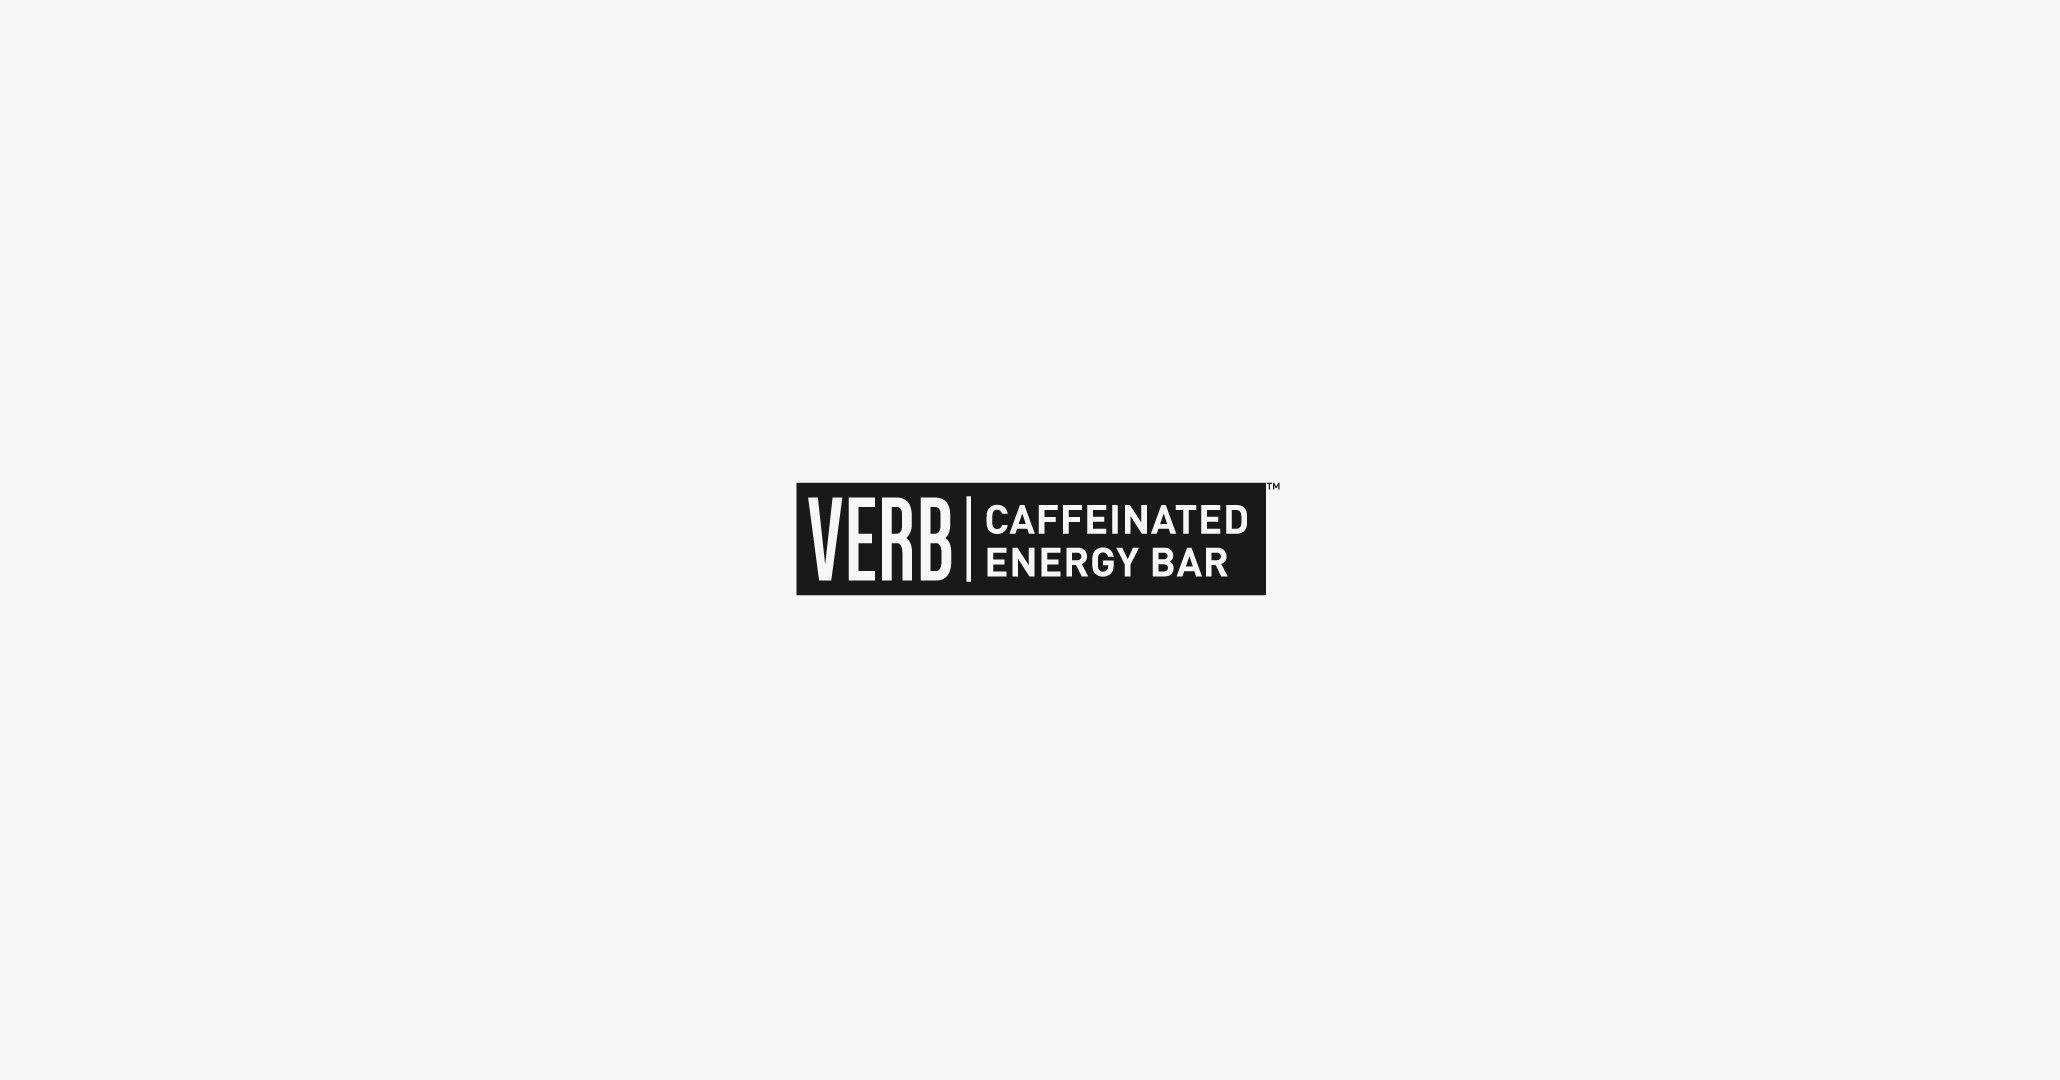 Verb Caffeinated Energy Bar Logo